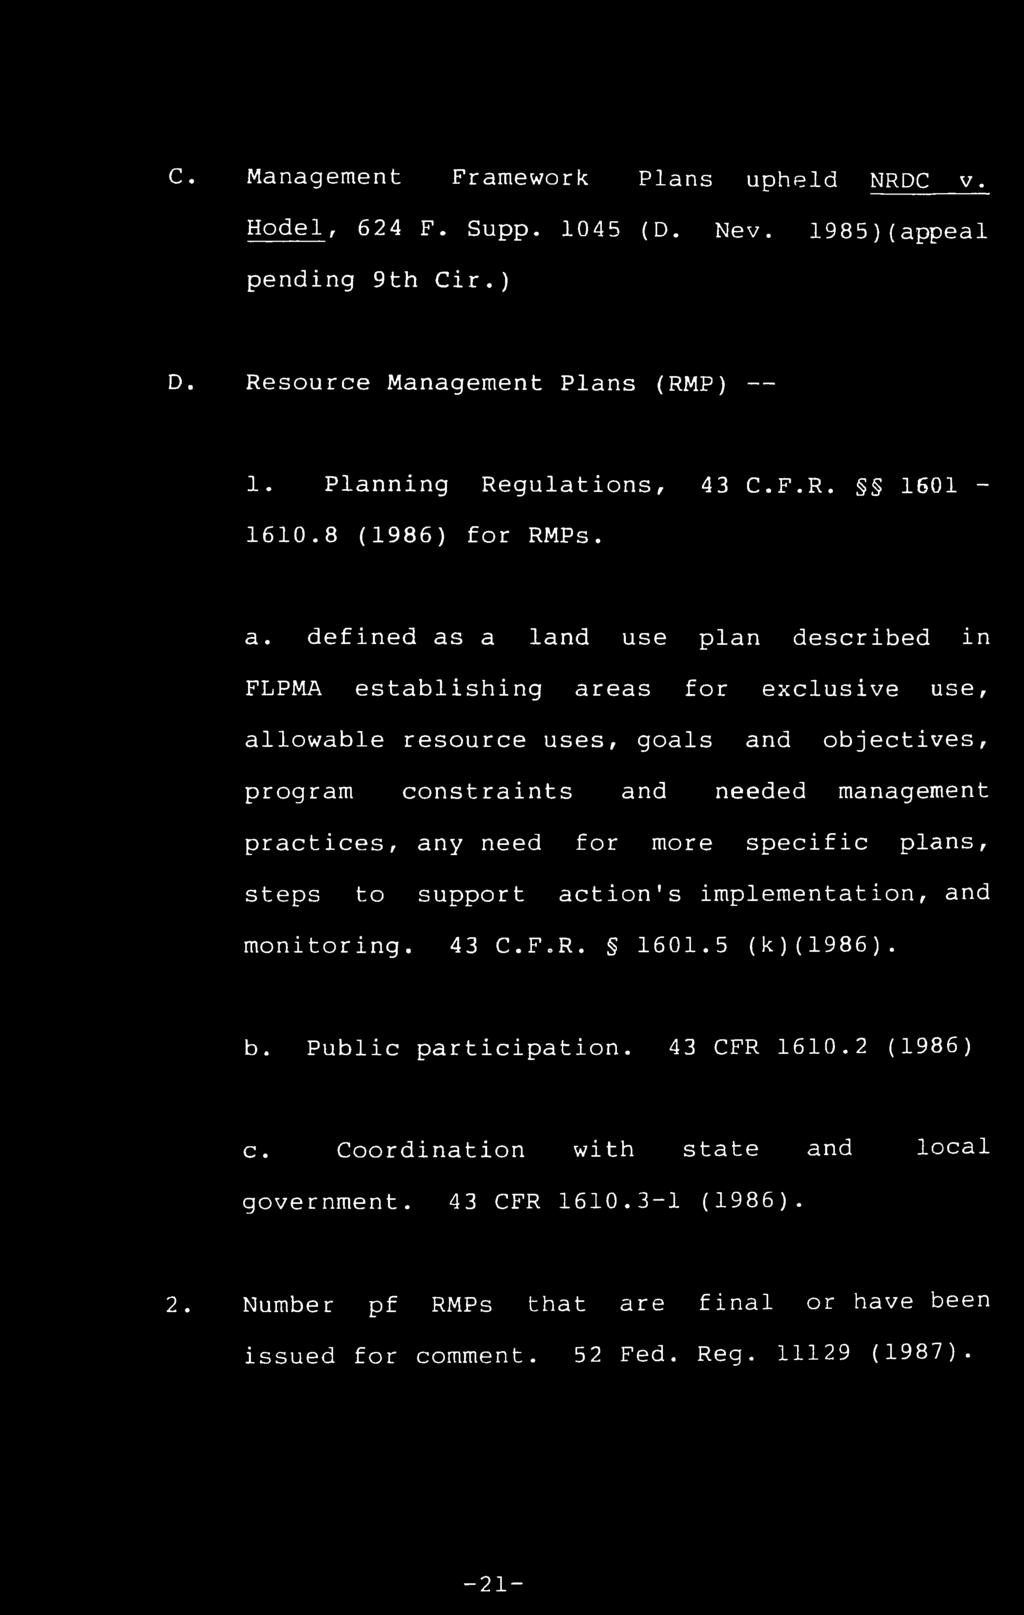 C. Management Framework Plans upheld NRDC v. Hodel, 624 F. Supp. 1045 (D. Nev. 1985)(appeal pending 9th Cir.) D. Resource Management Plans (RMP) 1. Planning Regulations, 43 C.F.R. 1601-1610.